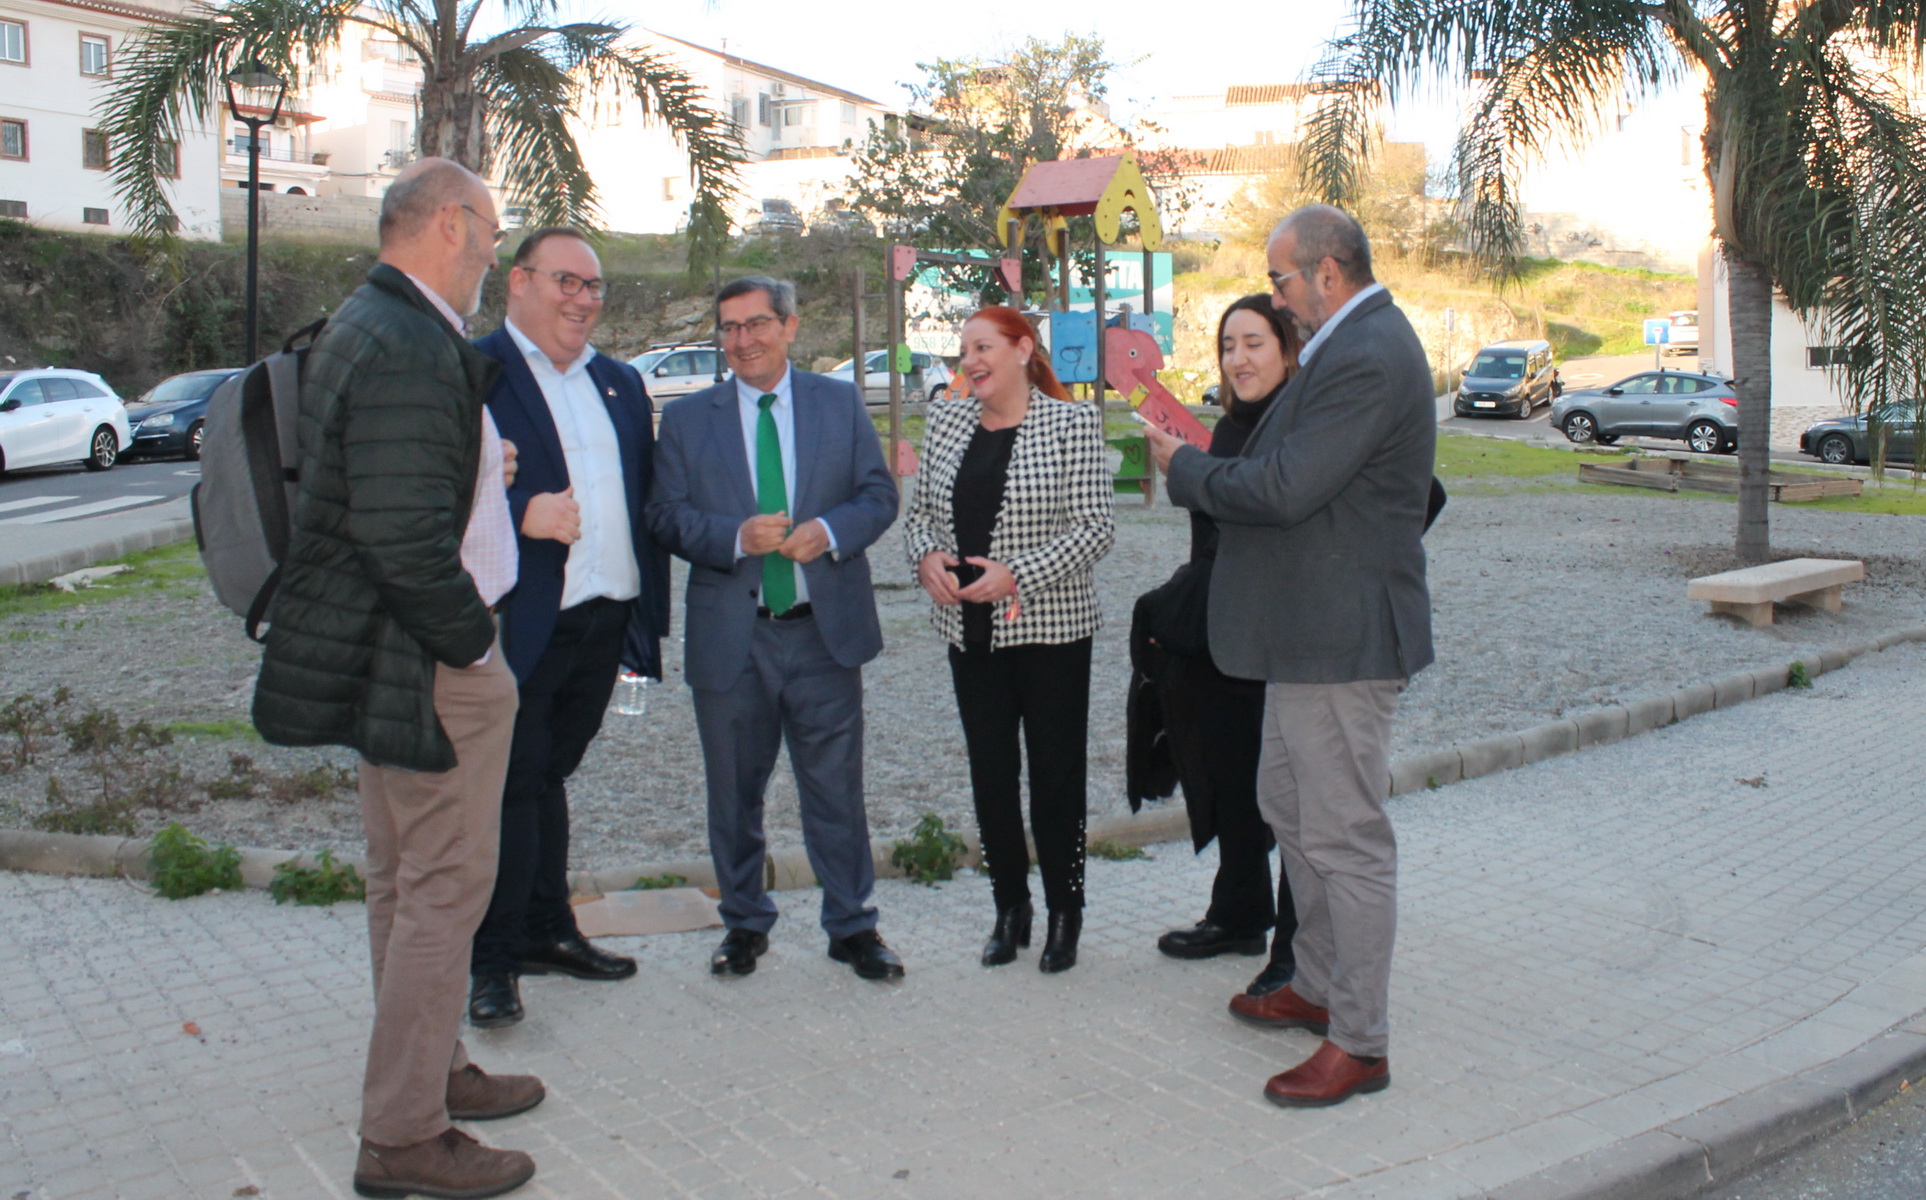 El presidente de la Diputación visita las próximas obras de mejora en Salobreña con cargo a la institución provincial